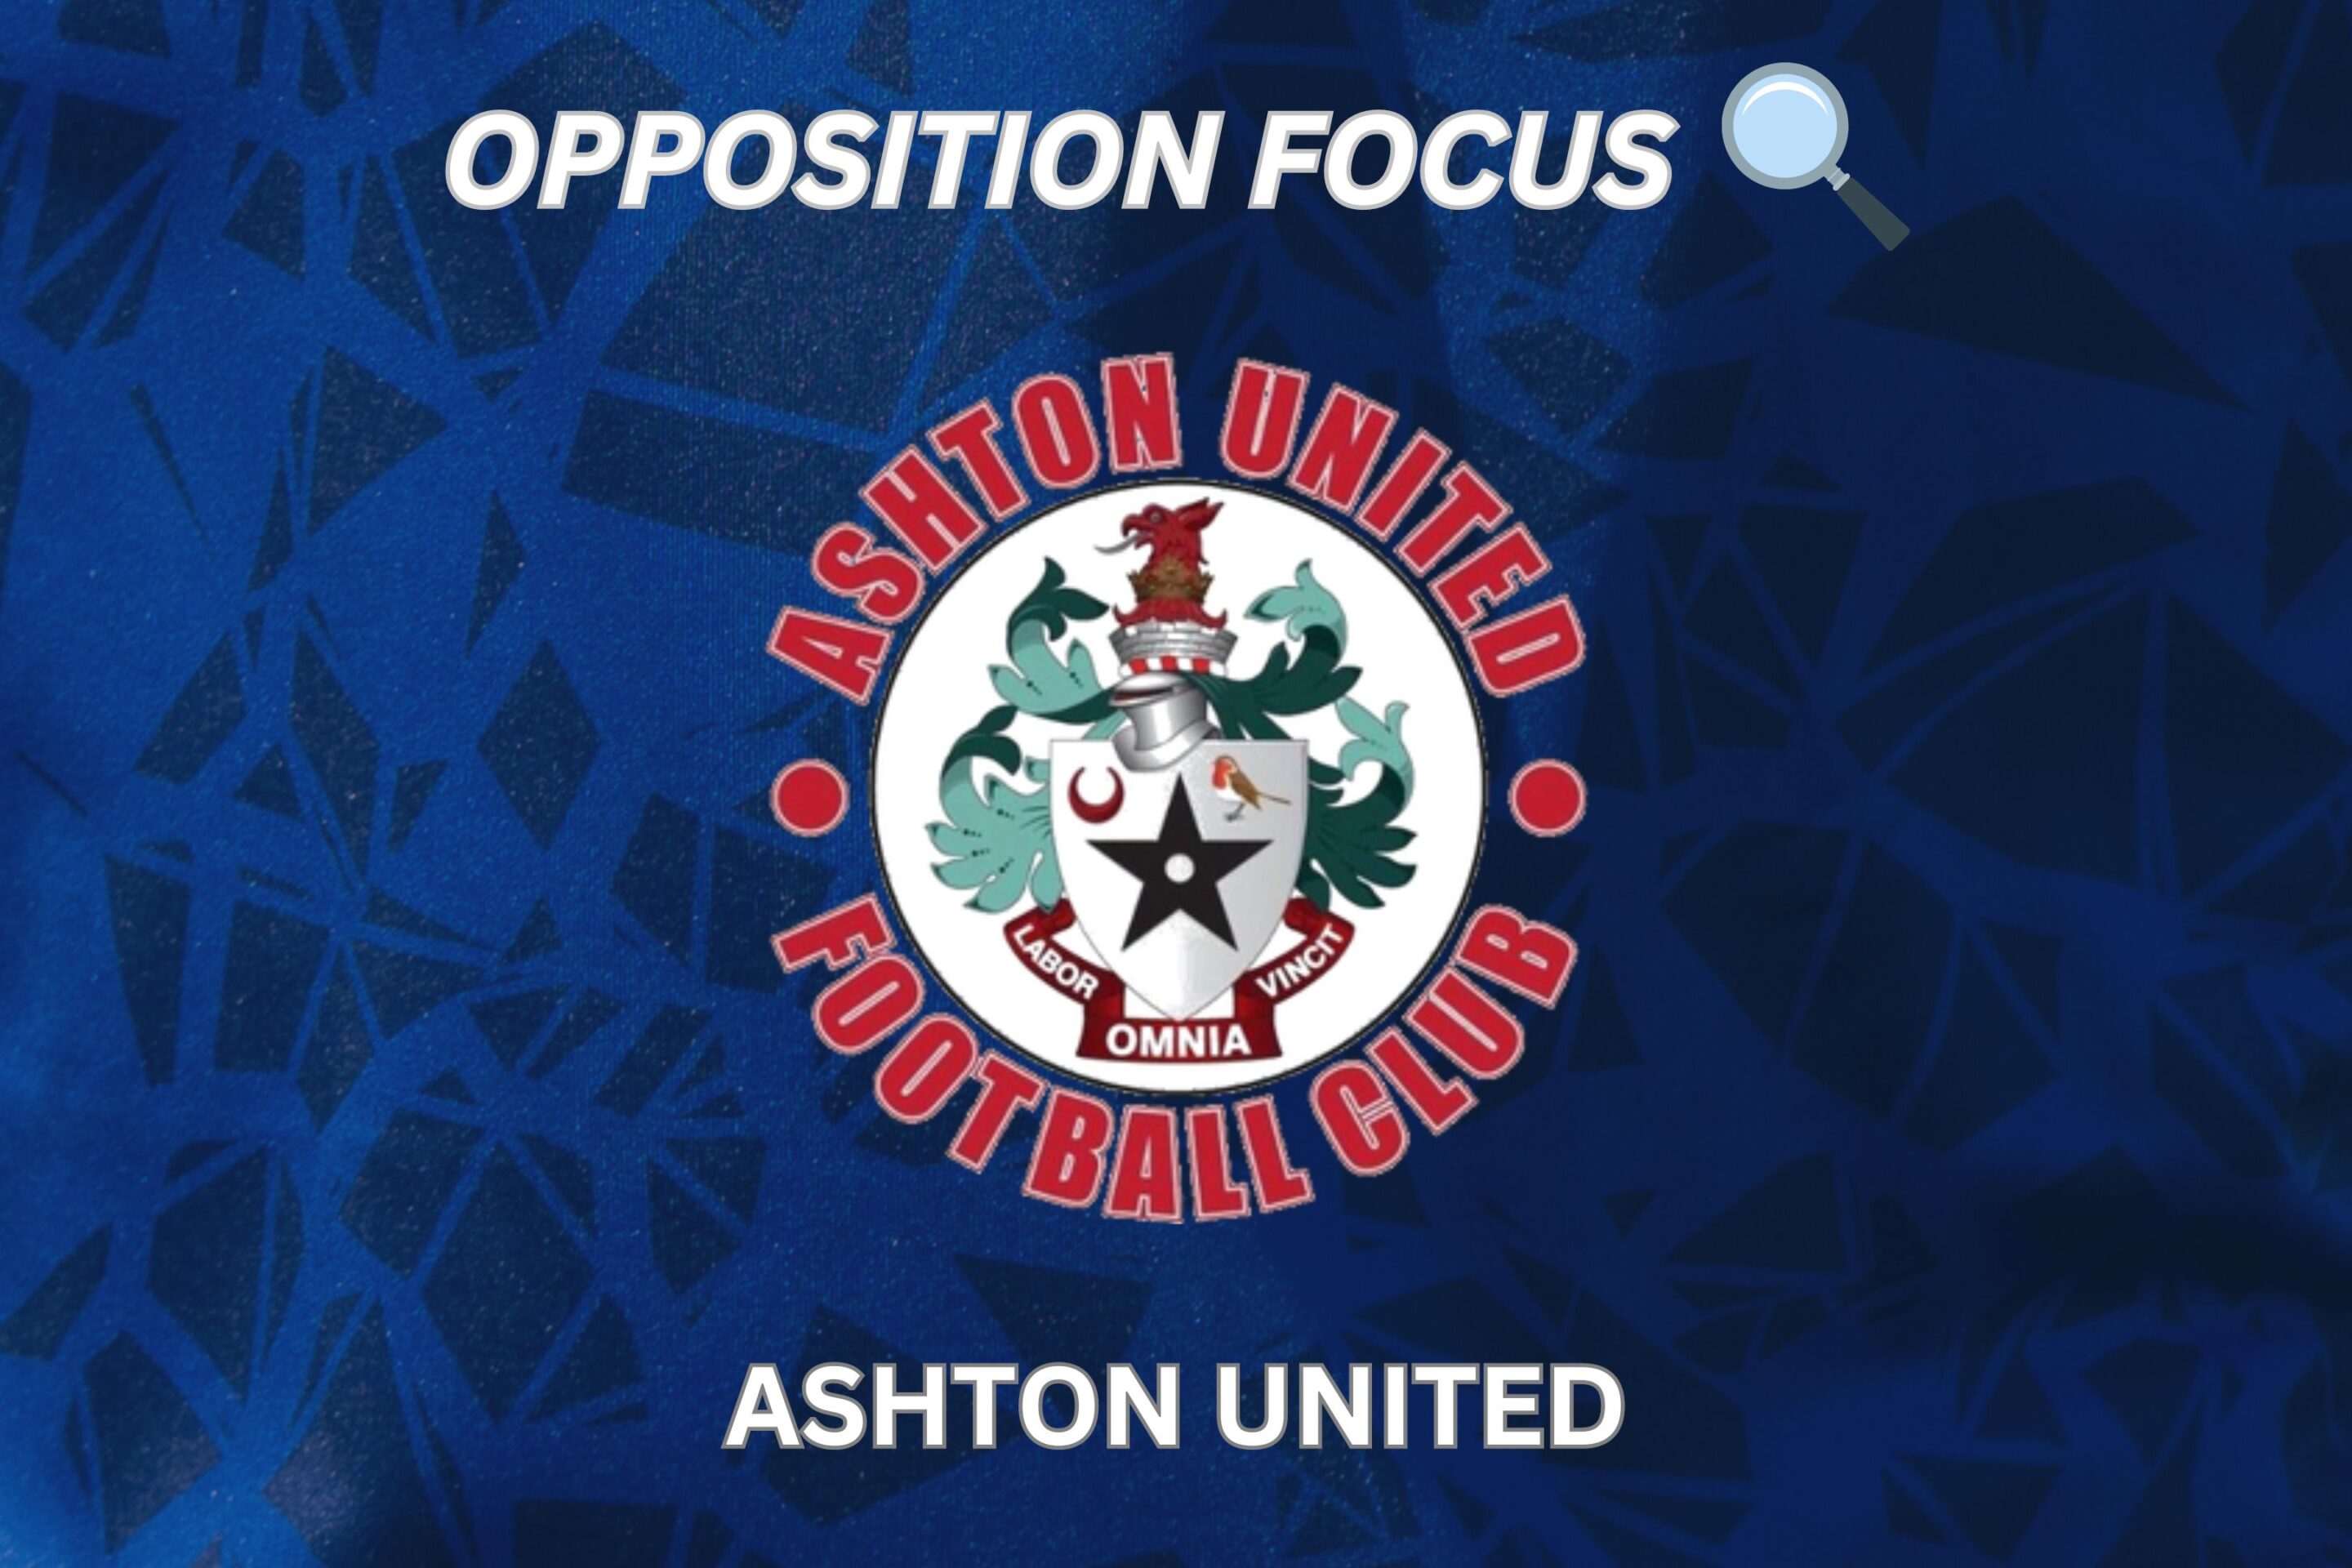 OPPOSITION FOCUS: ASHTON UNITED